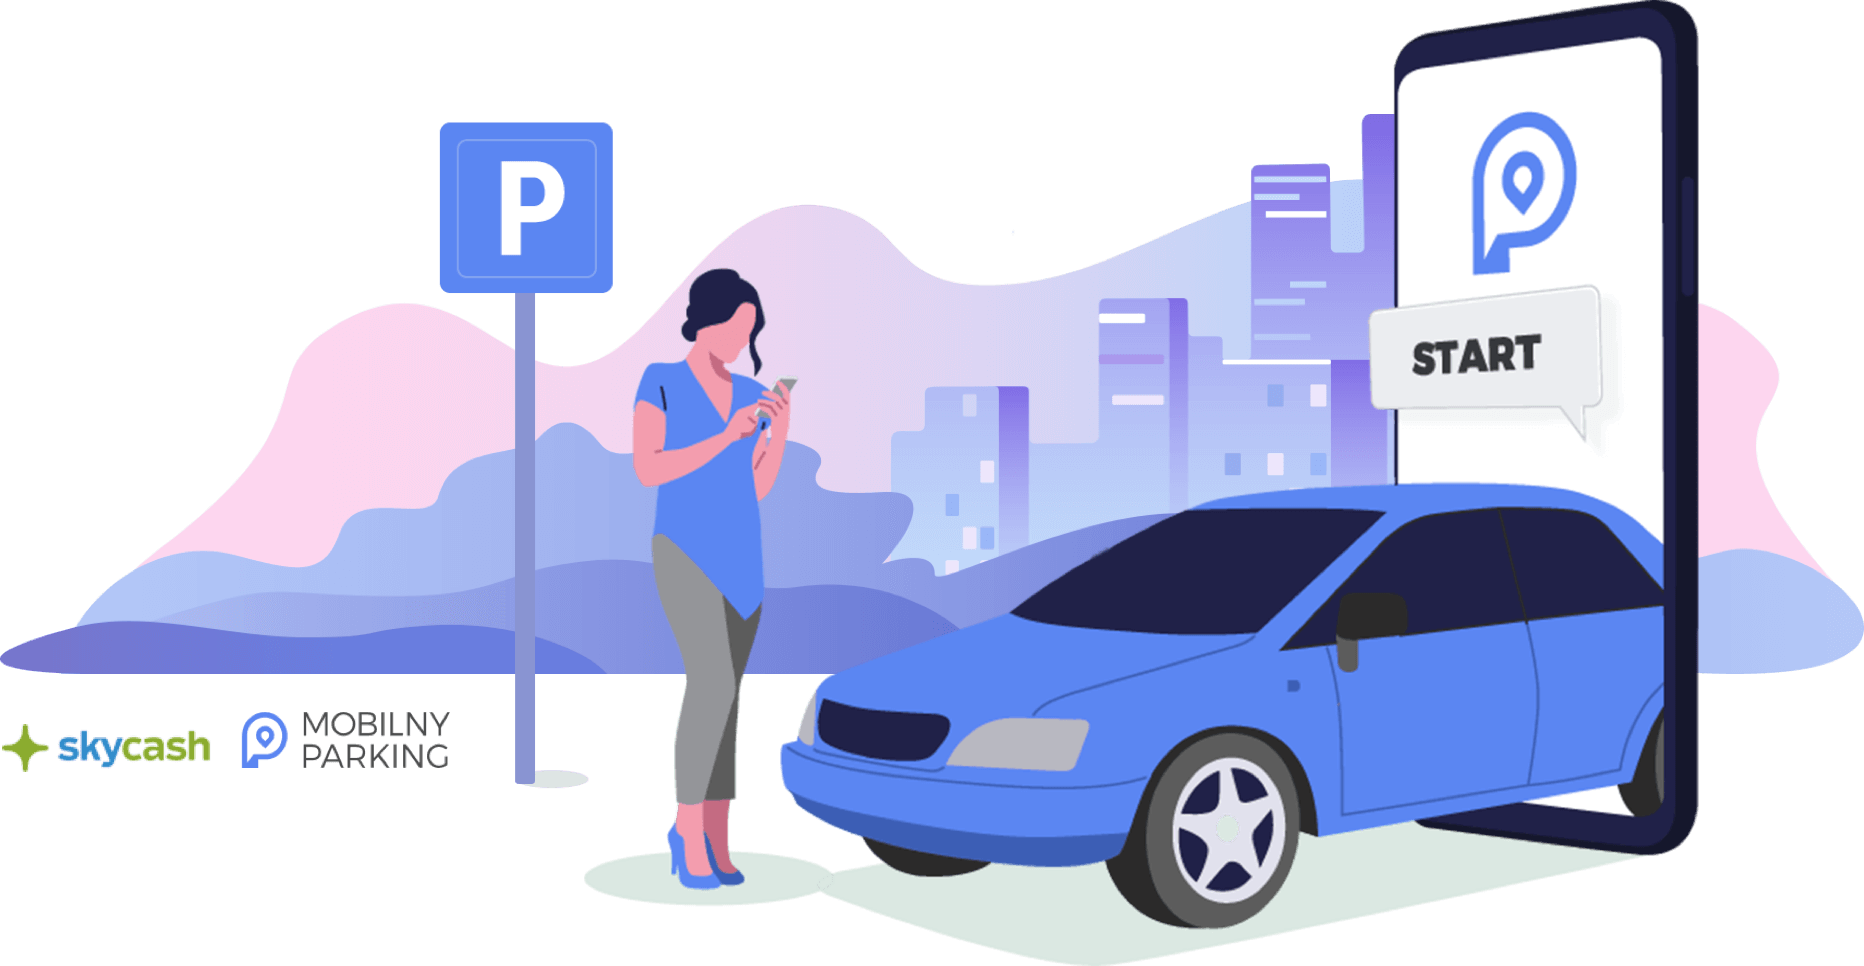 Mobilny parking z PLAY w ponad 70 miastach już teraz